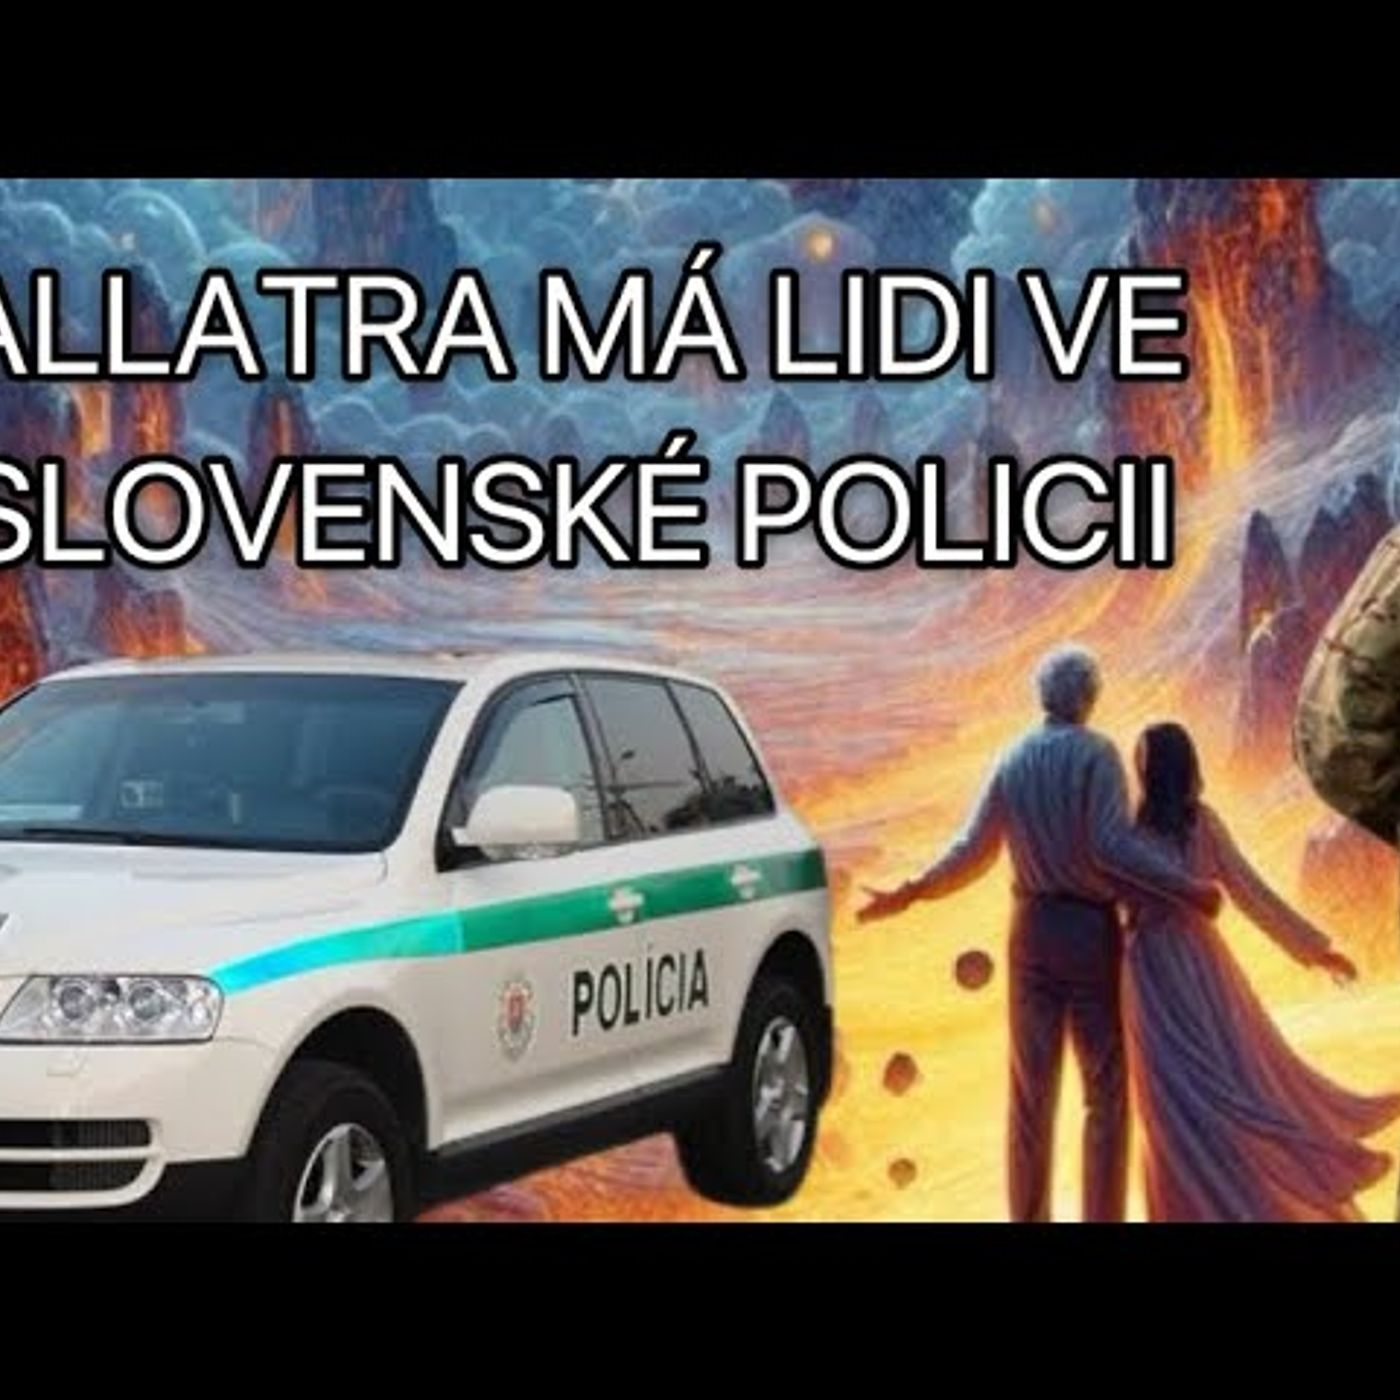 Allatra infiltrovala slovenskou policii